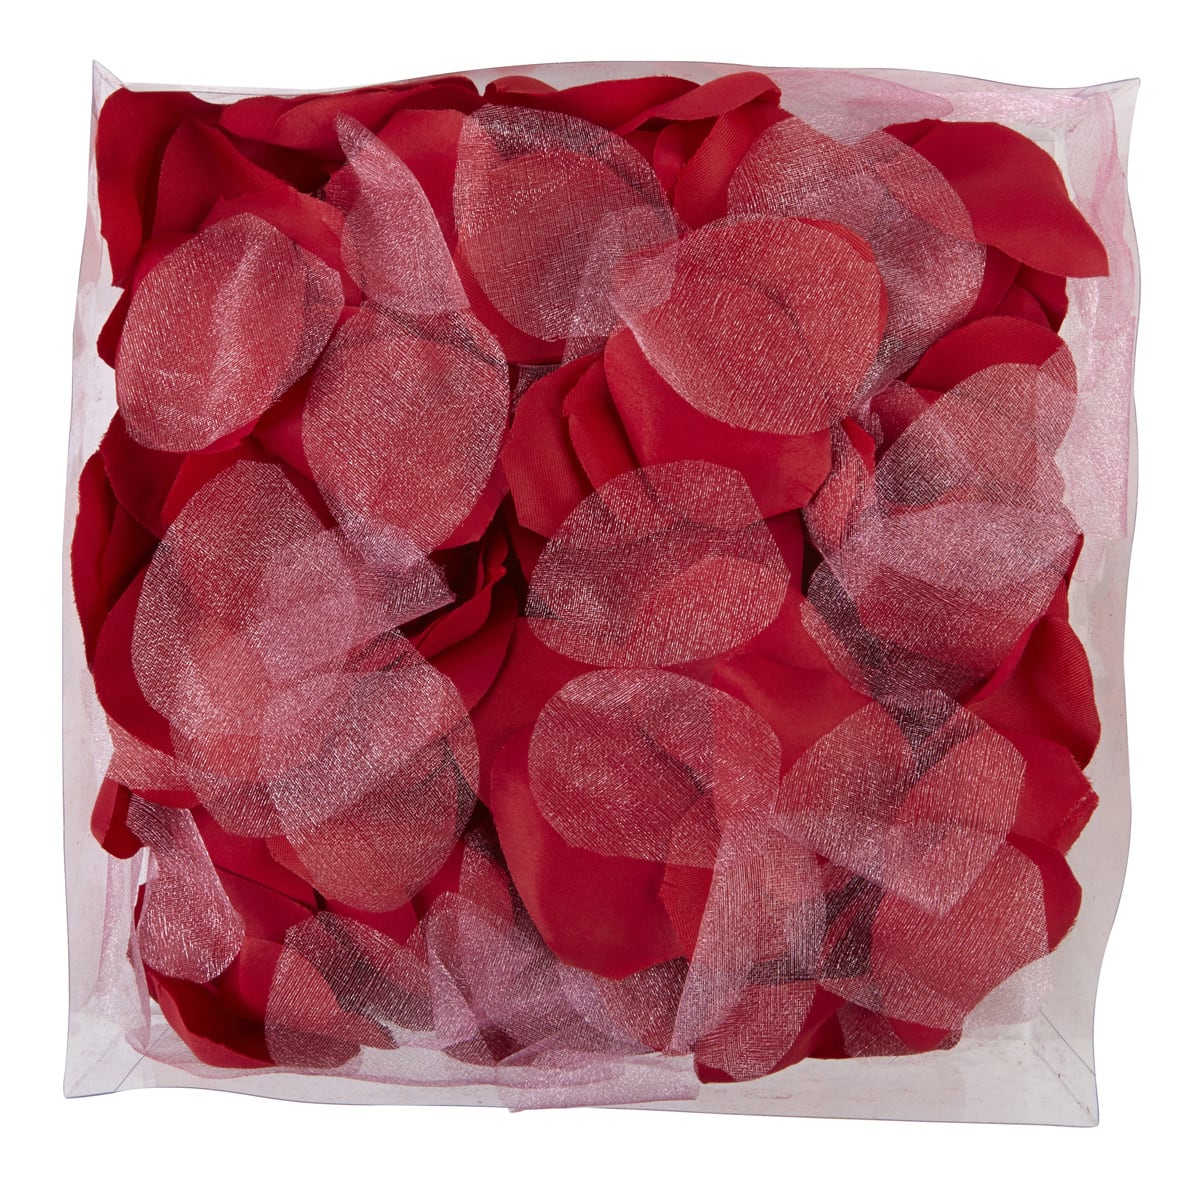 Bag of Rose Petals